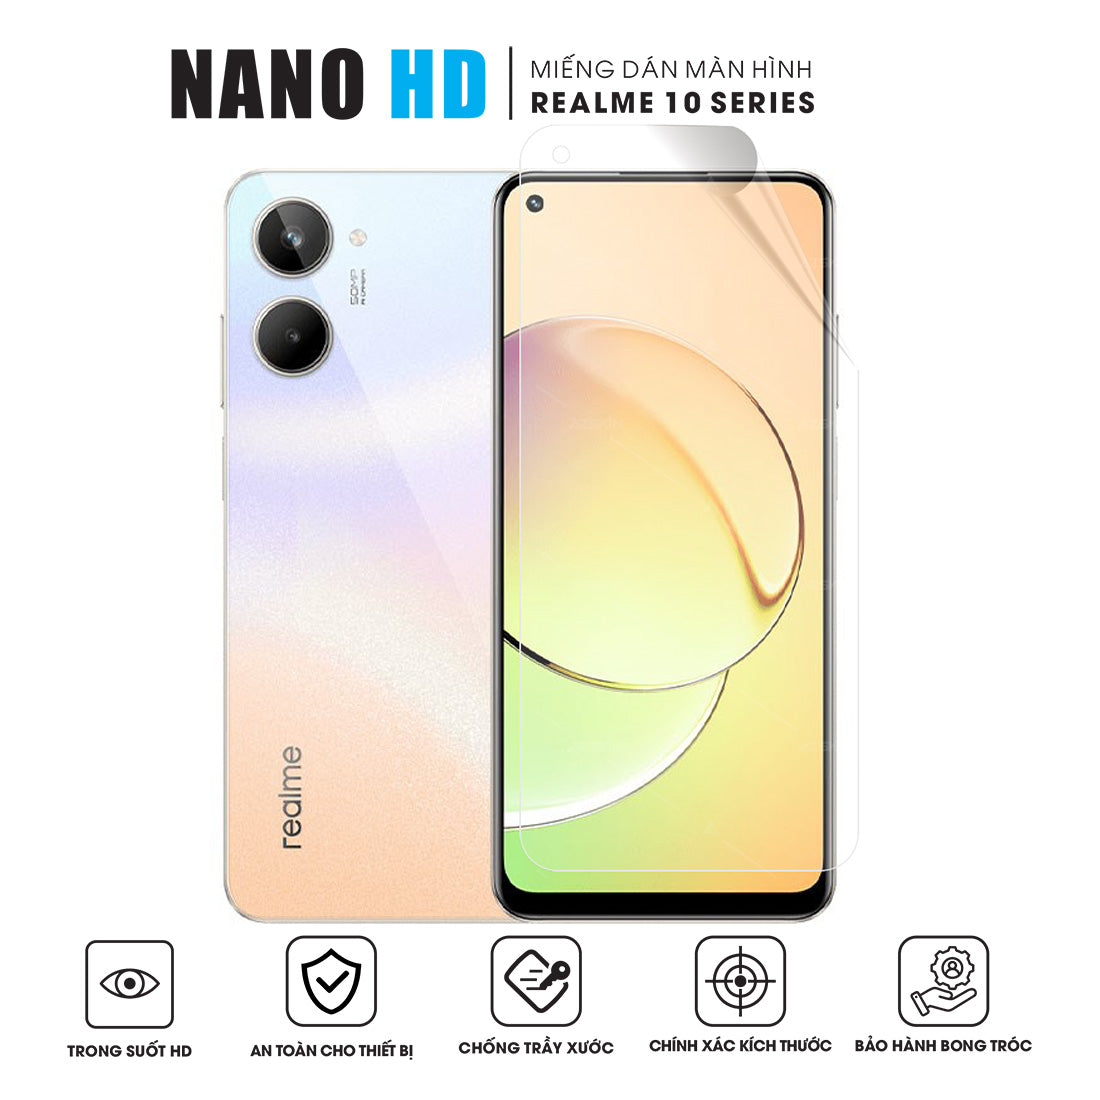 Miếng dán màn hình NANO HD điện thoại Realme 10 | Pro | Pro+